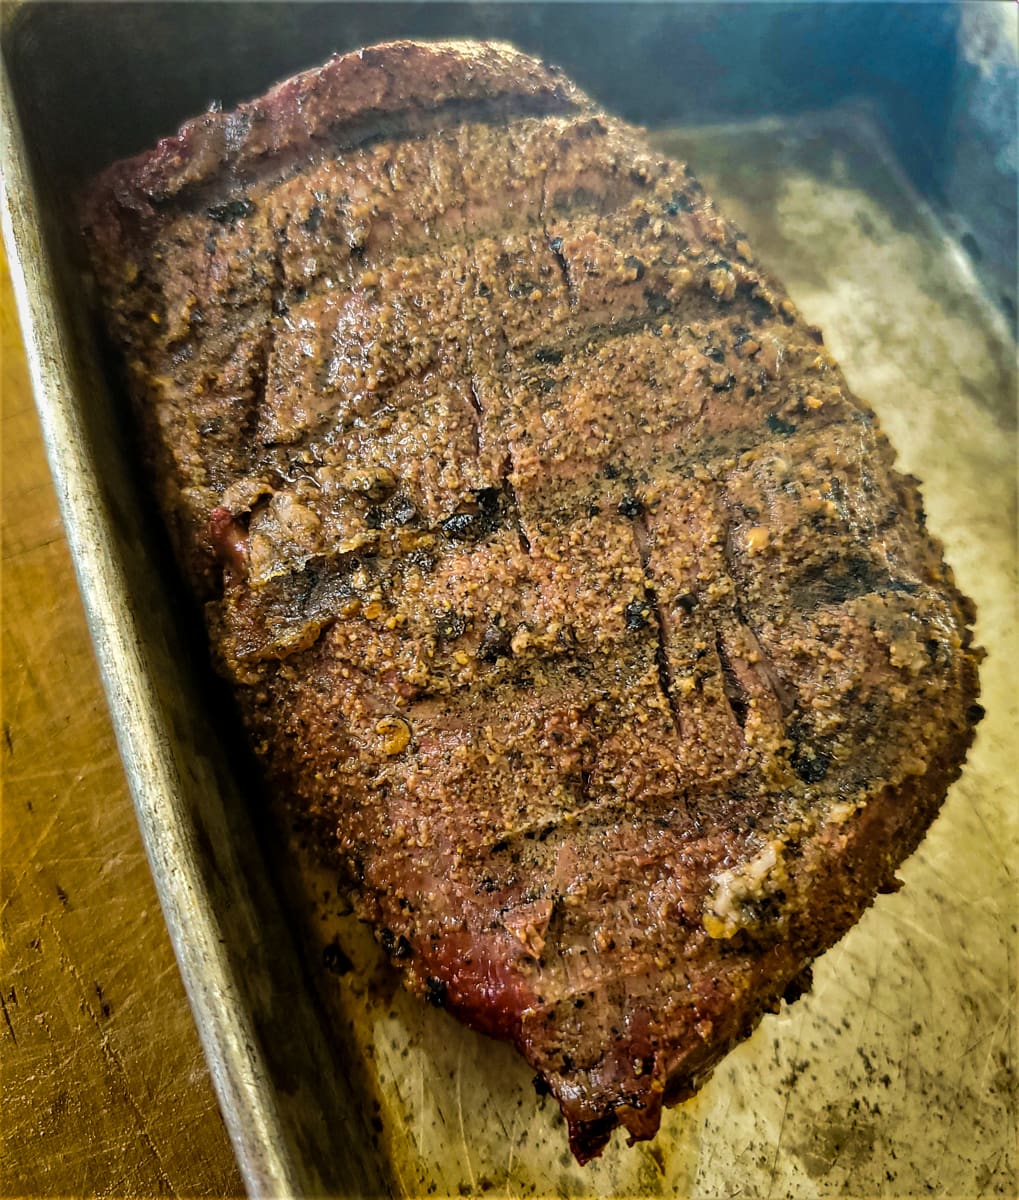 Reverse seared beef tenderloin resting in a pan.